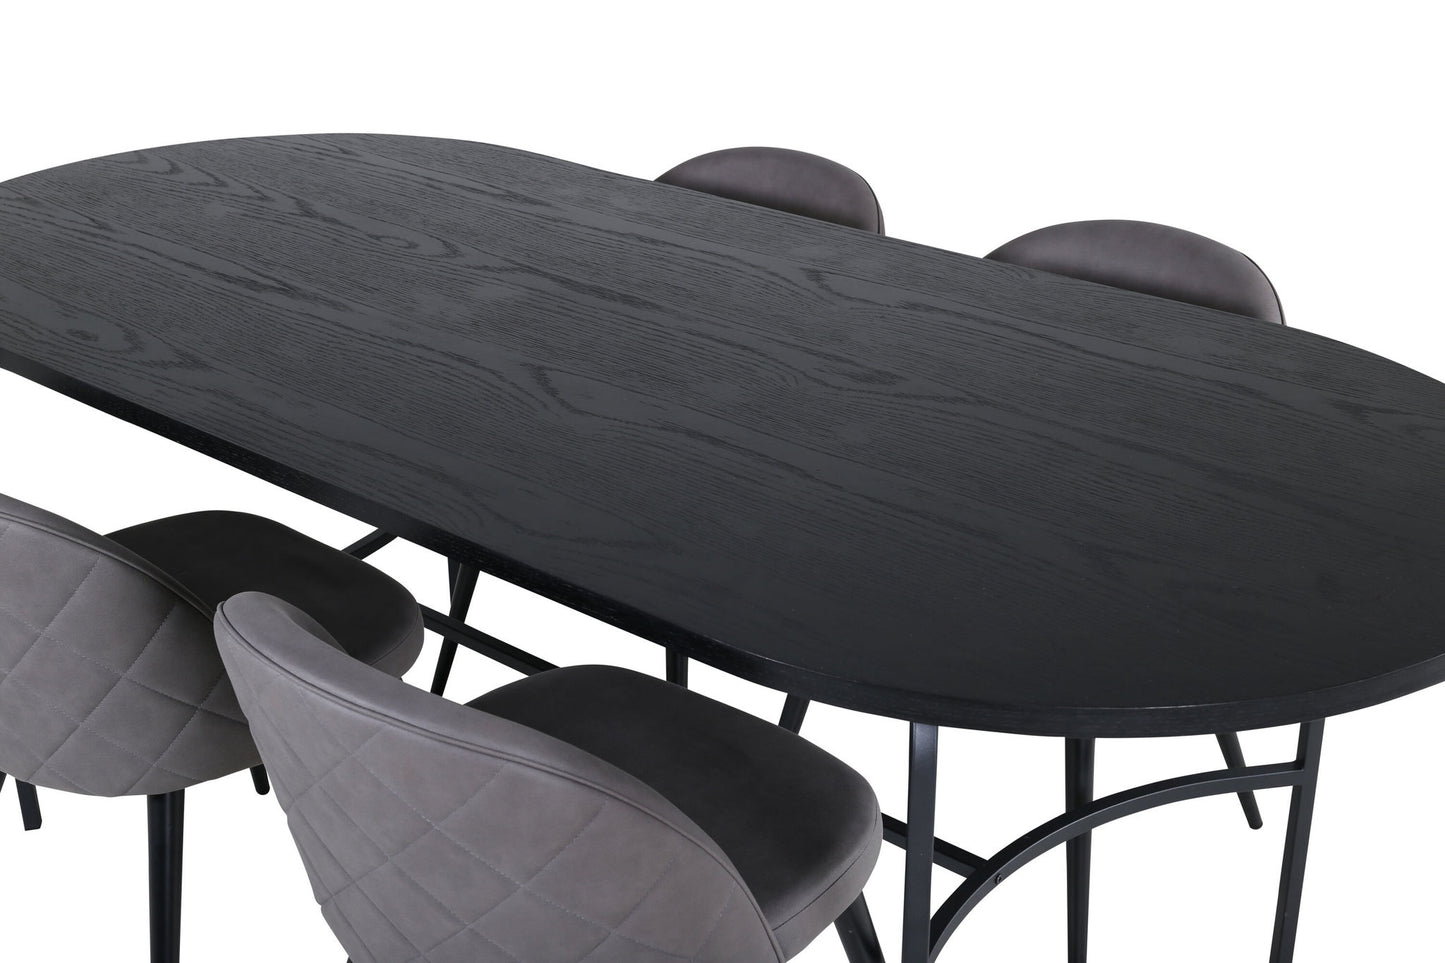 Skate - Ovalt spisebord, Sort finér+ velour syninger Stol - Sort / Grå mikrofiber